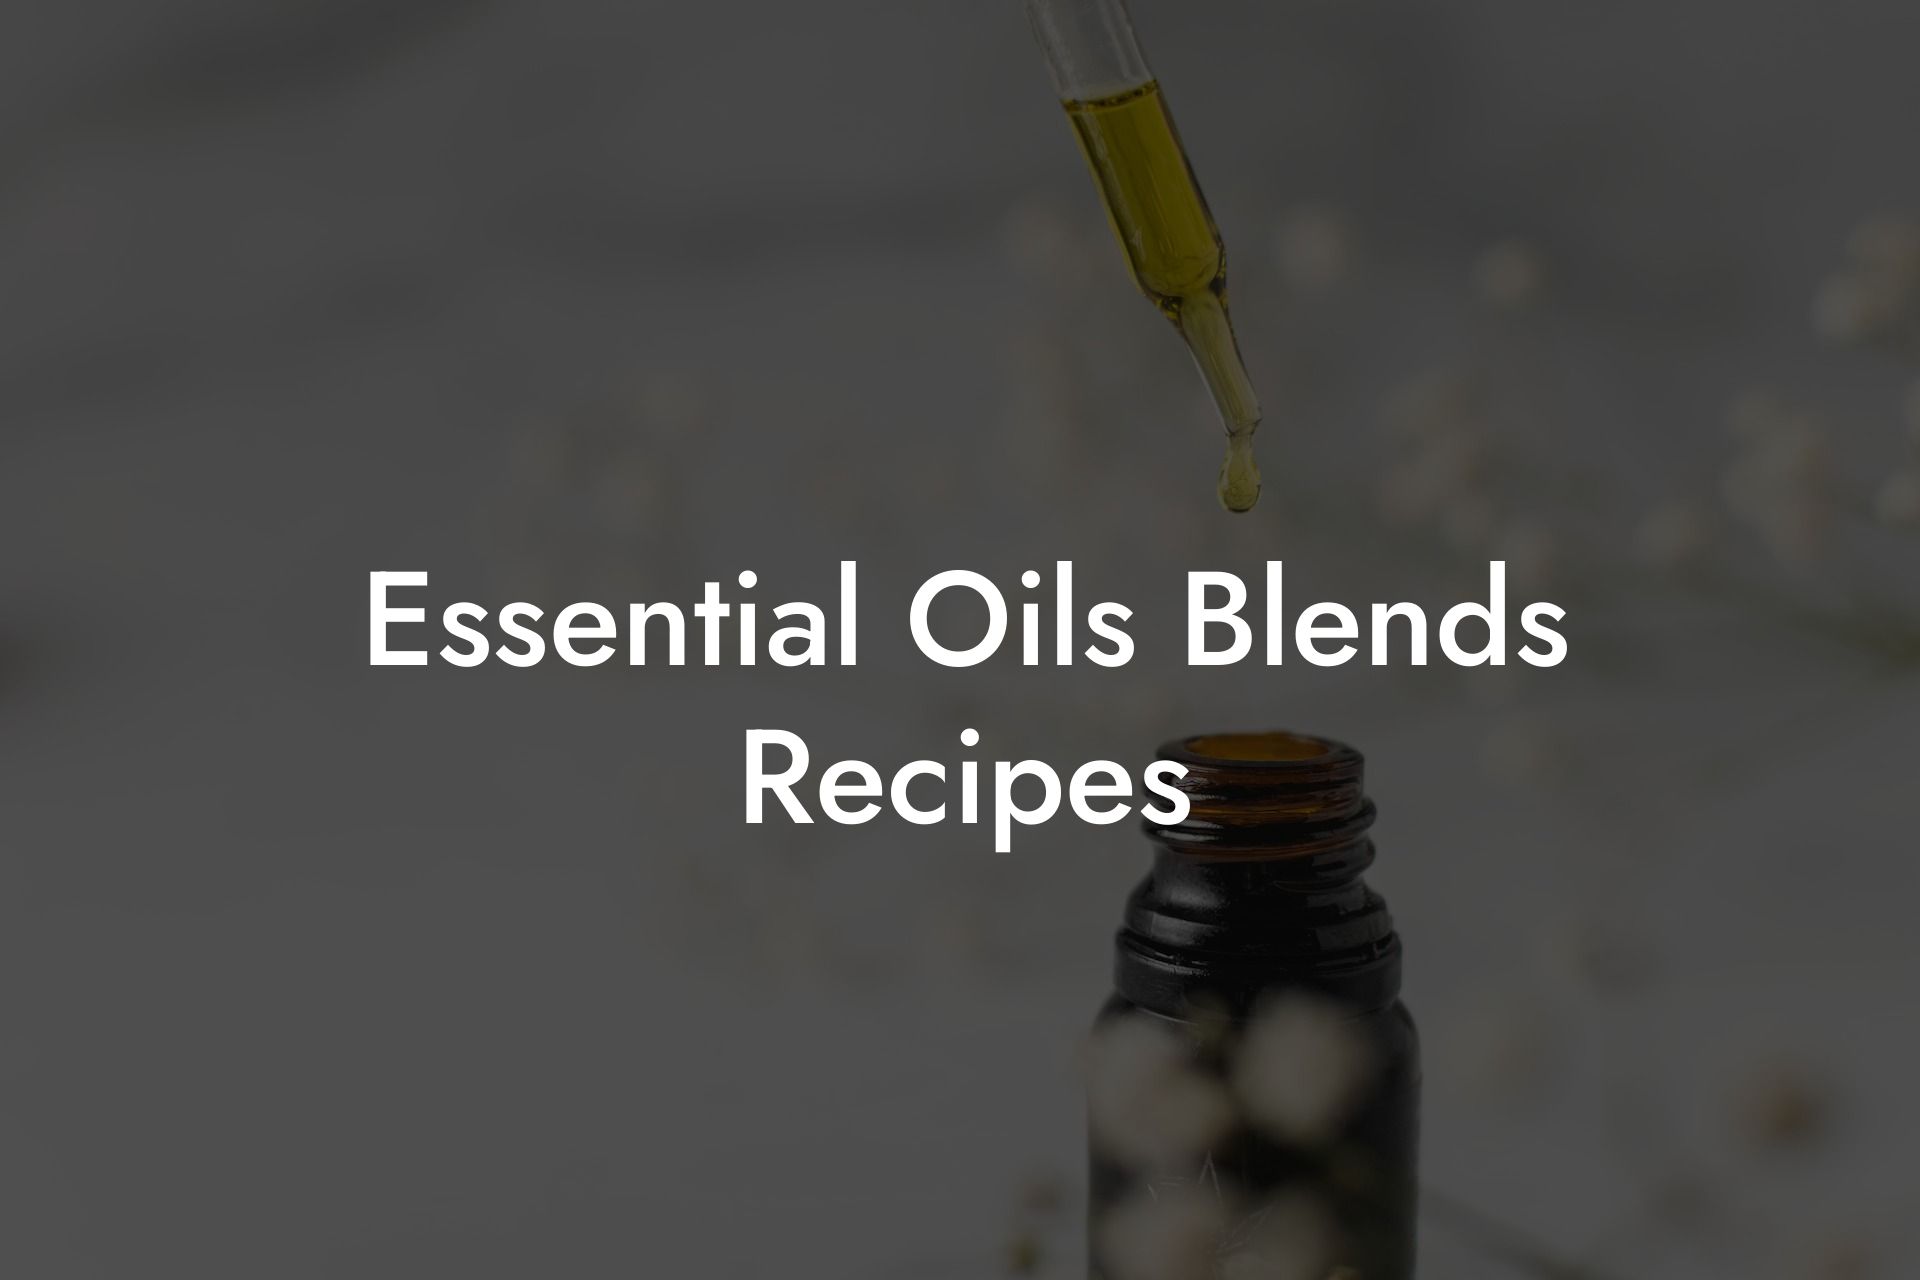 Essential Oils Blends Recipes